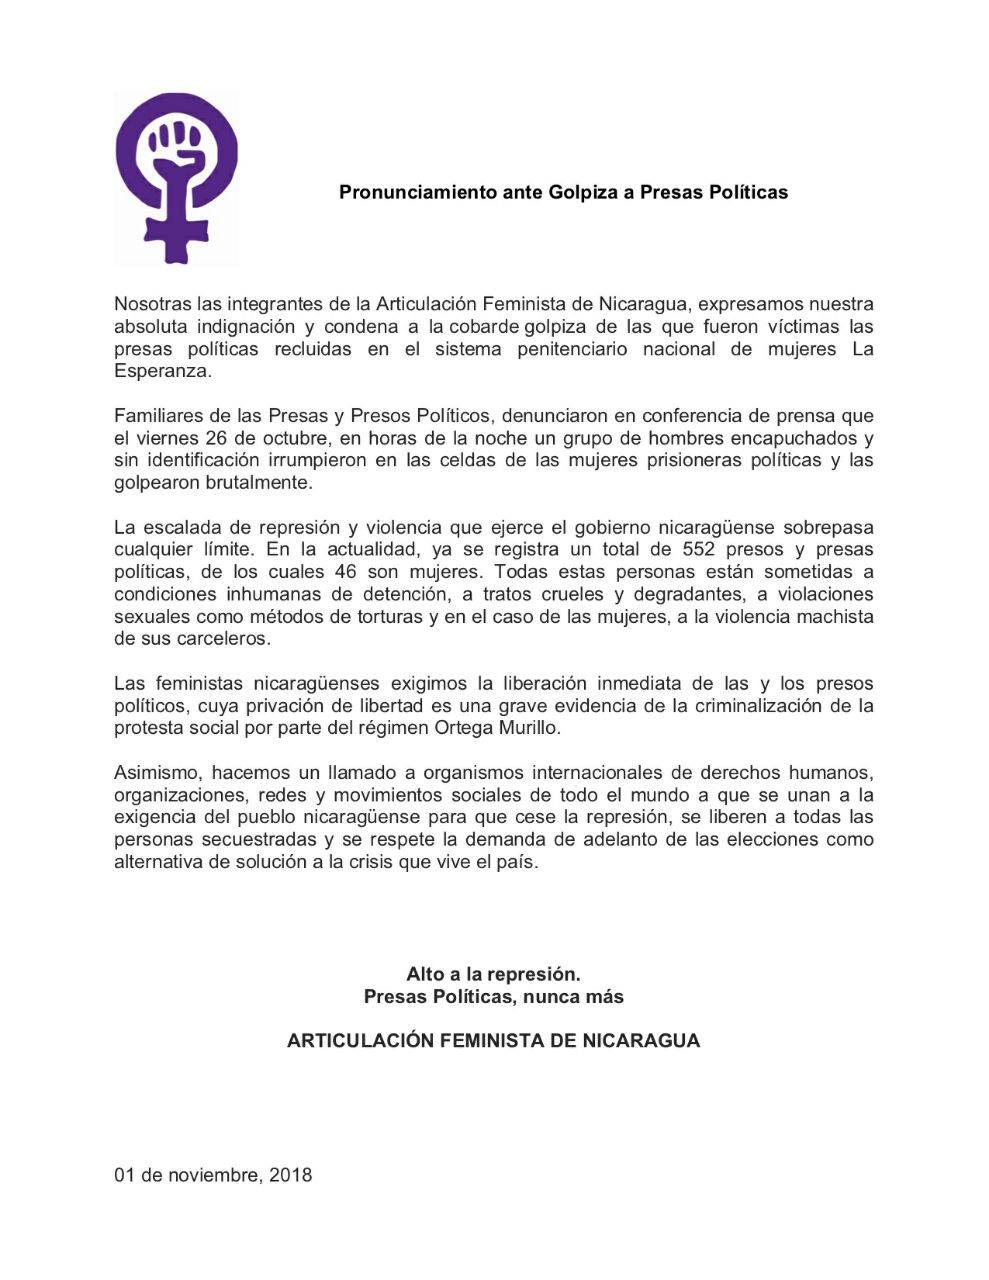 Pronunciamiento de la Articulación Feminista de Nicaragua